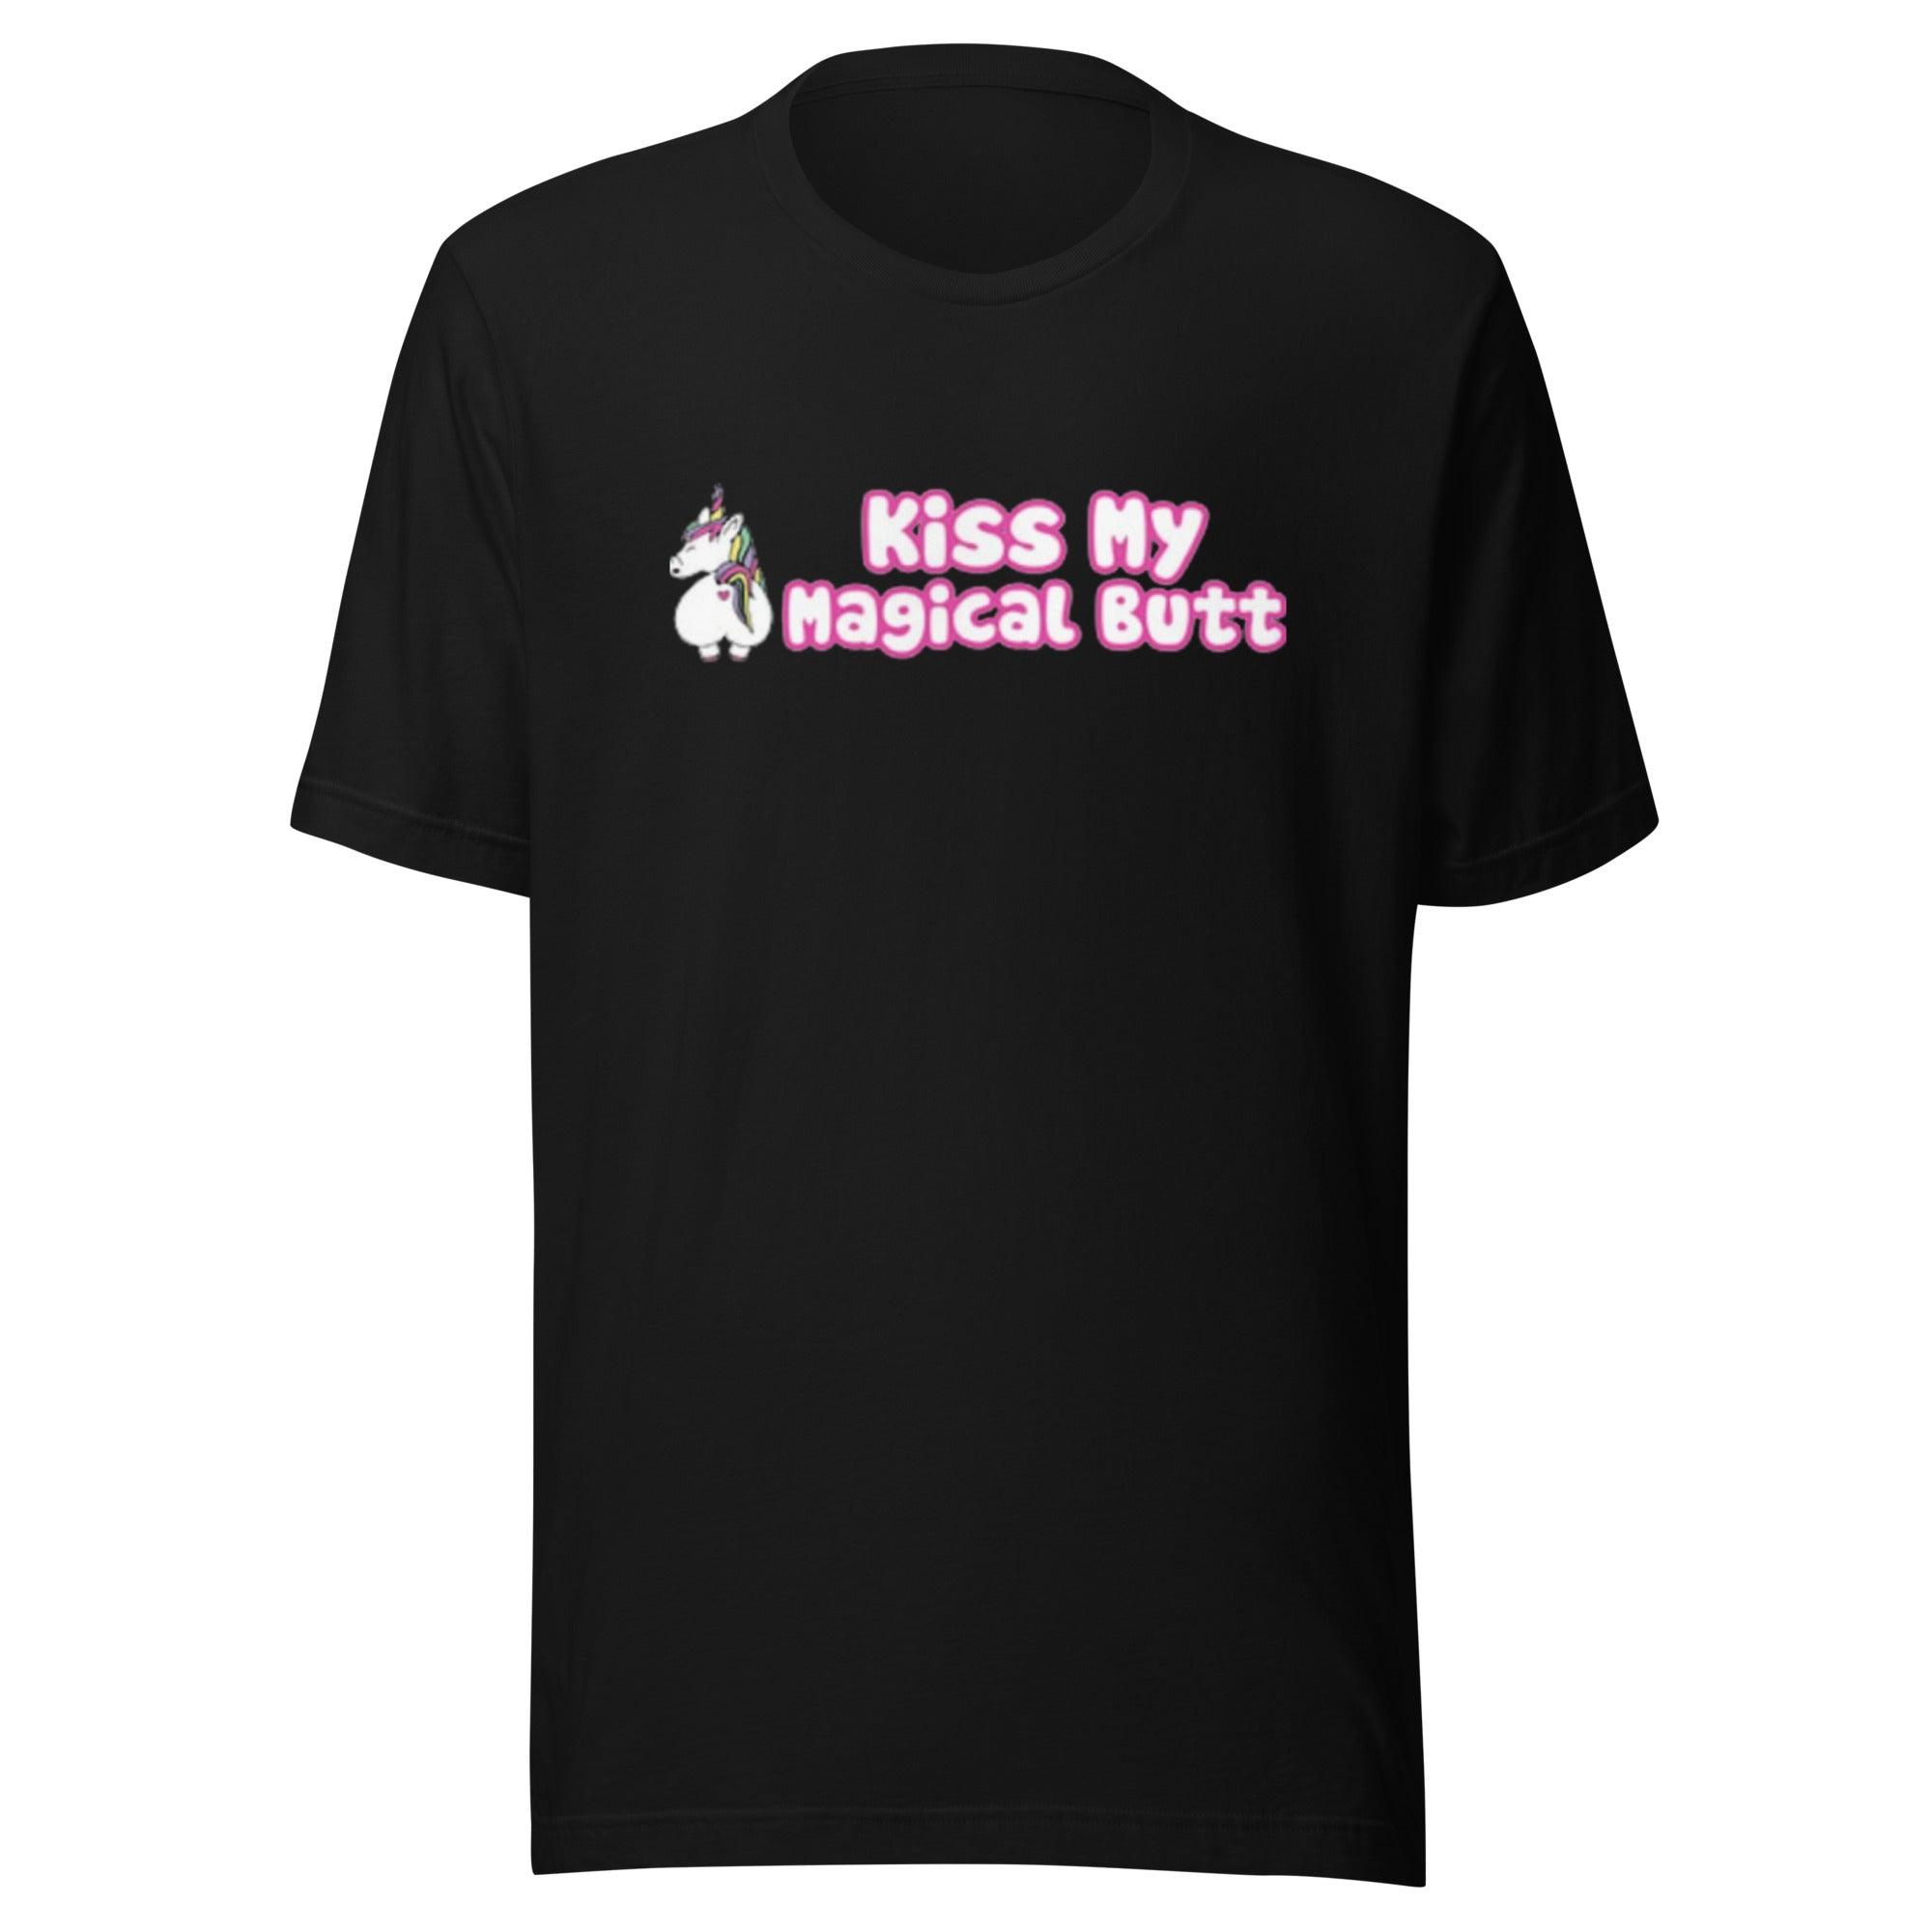 Unicorn T-shirt Kiss My Magical Butt  Short Sleeve 100% Ultra Soft Cotton Crew Neck Top